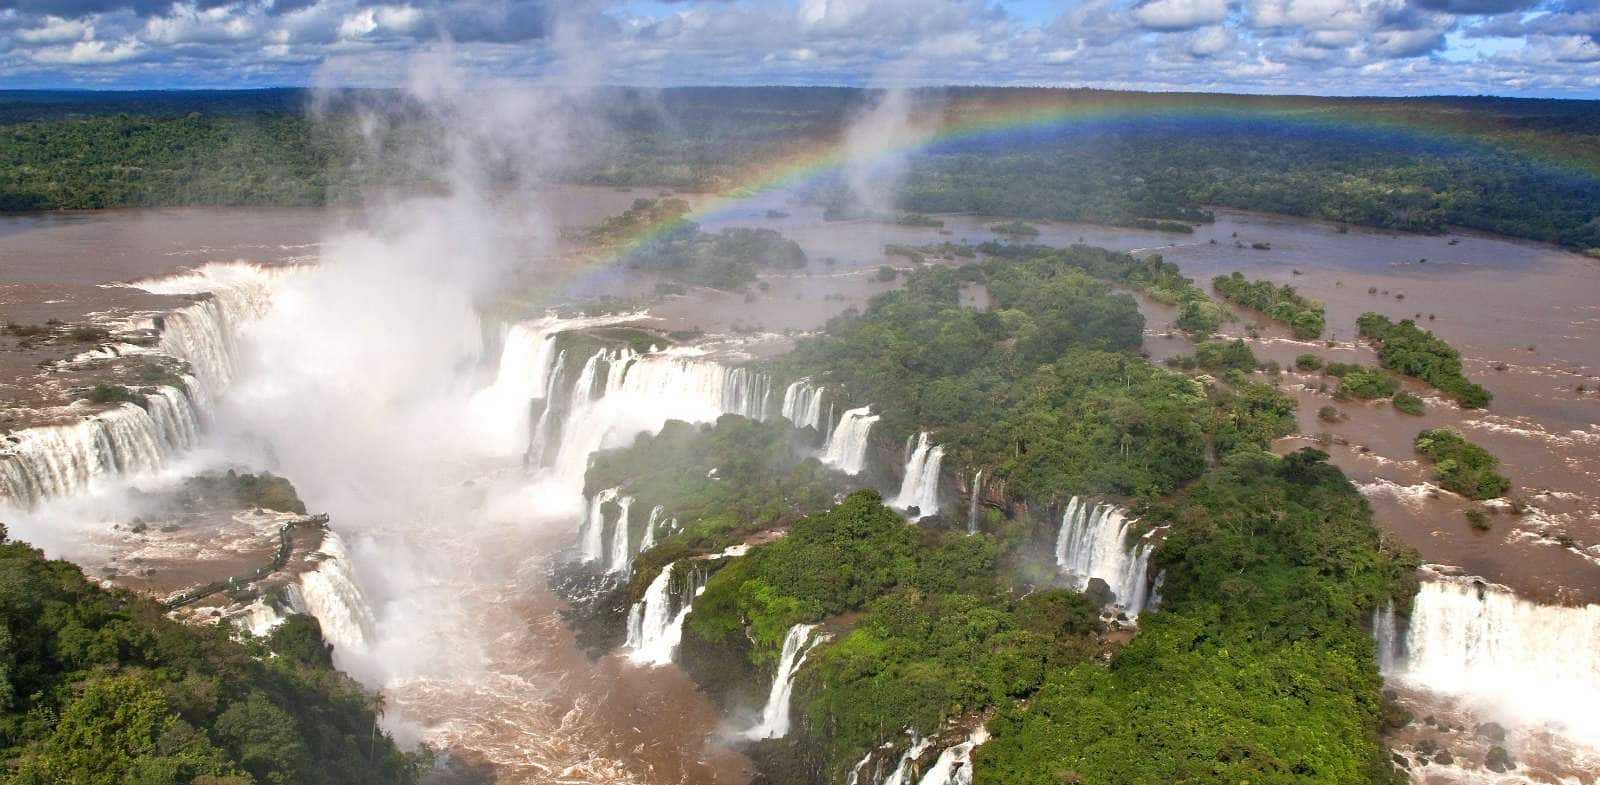 Бразилия природный мир. Пуэрто Игуасу Аргентина. Игуасу (национальный парк, Бразилия). Национальный парк Игуасу, Бразилия / Аргентина. Водопад в Бразилии Игуасу отель.